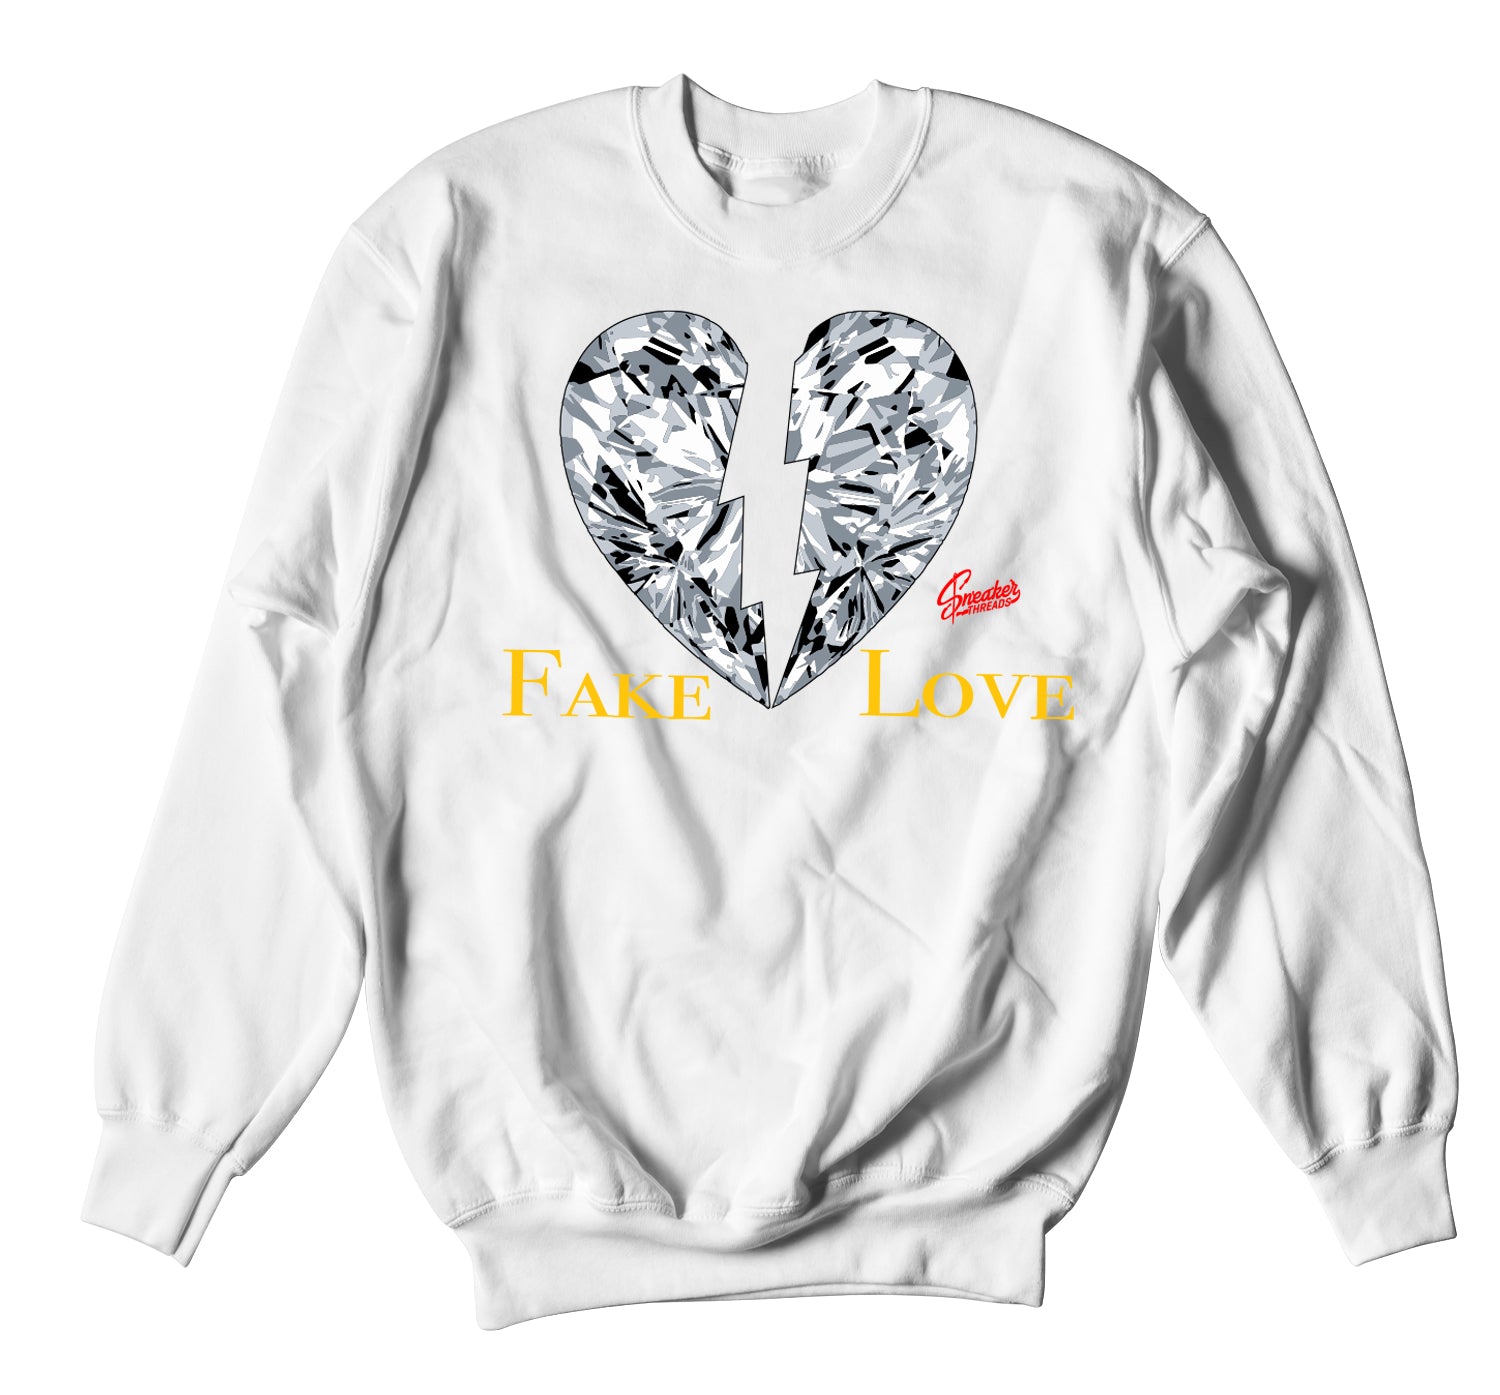 Retro 3 Cool Grey Sweater - Love - White